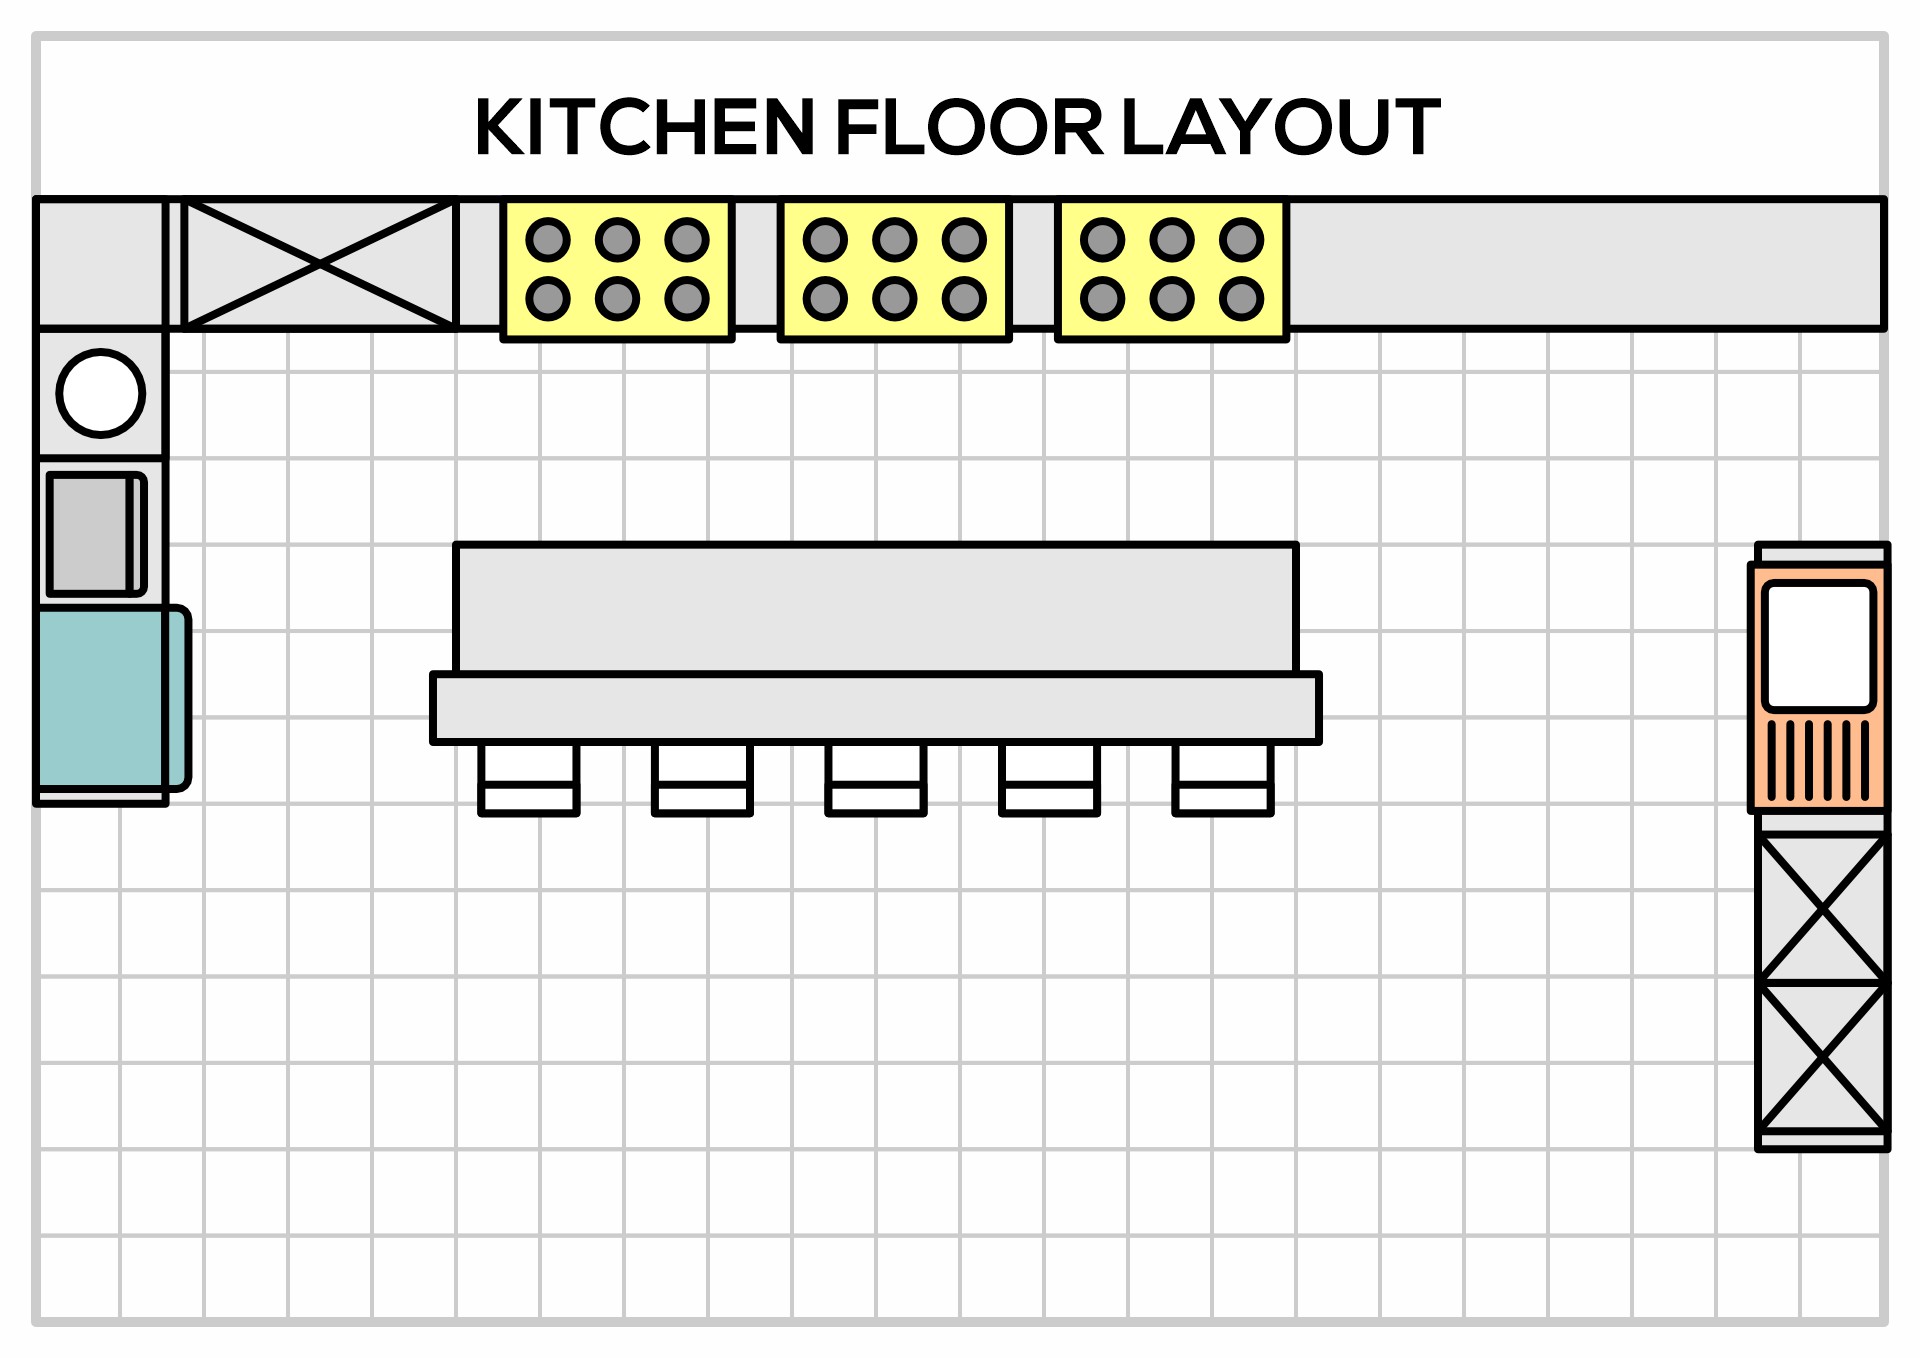 12 x 18 kitchen floor plans bath